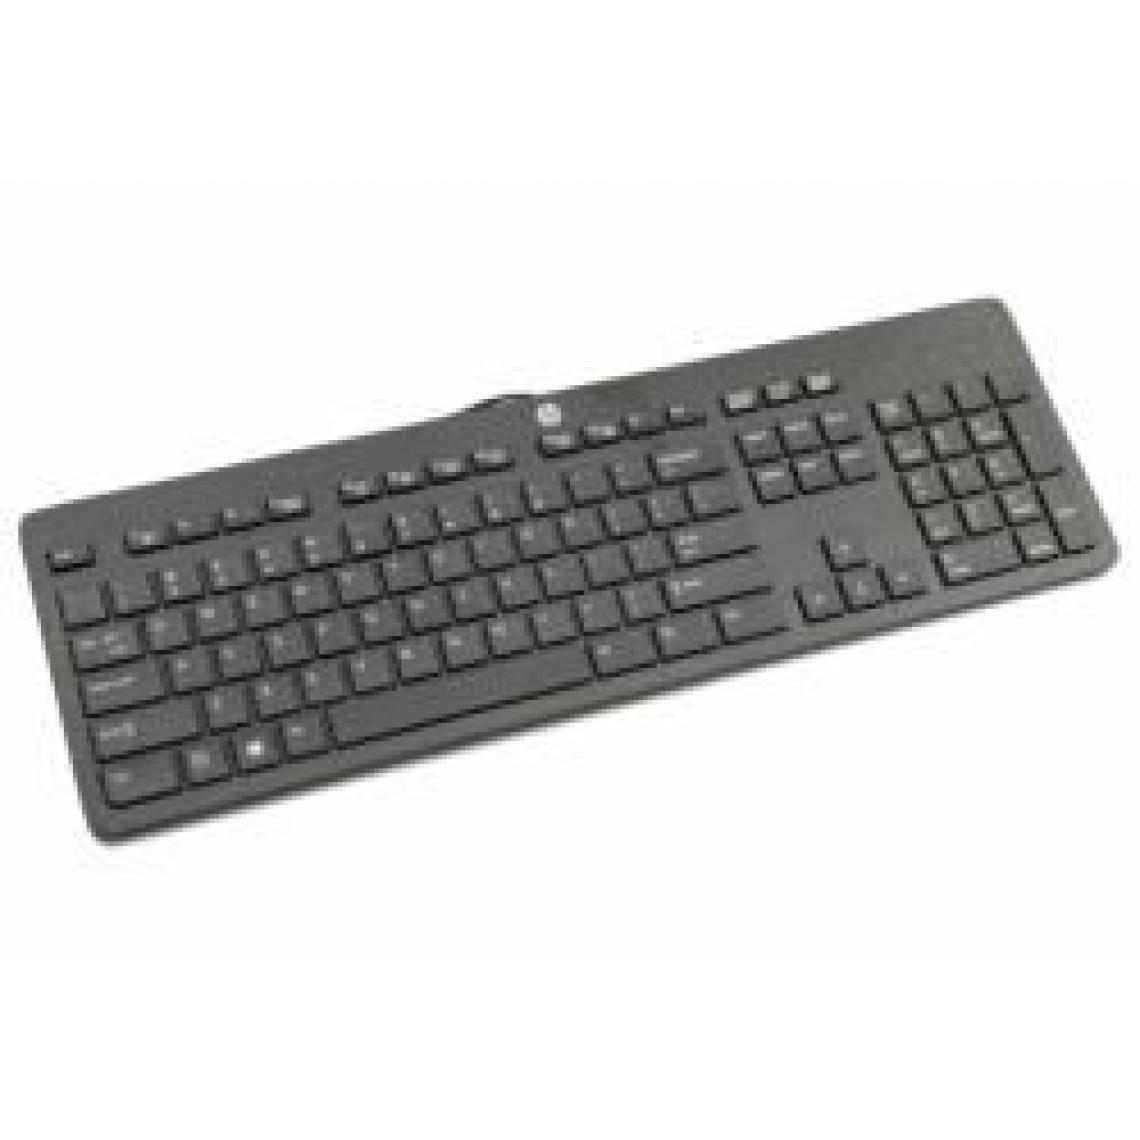 Inconnu - HP 803181-041 USB QWERTZ Allemand Noir clavier - claviers (Standard, Avec fil, USB, Clavier mécanique, QWERTZ, Noir) - Clavier